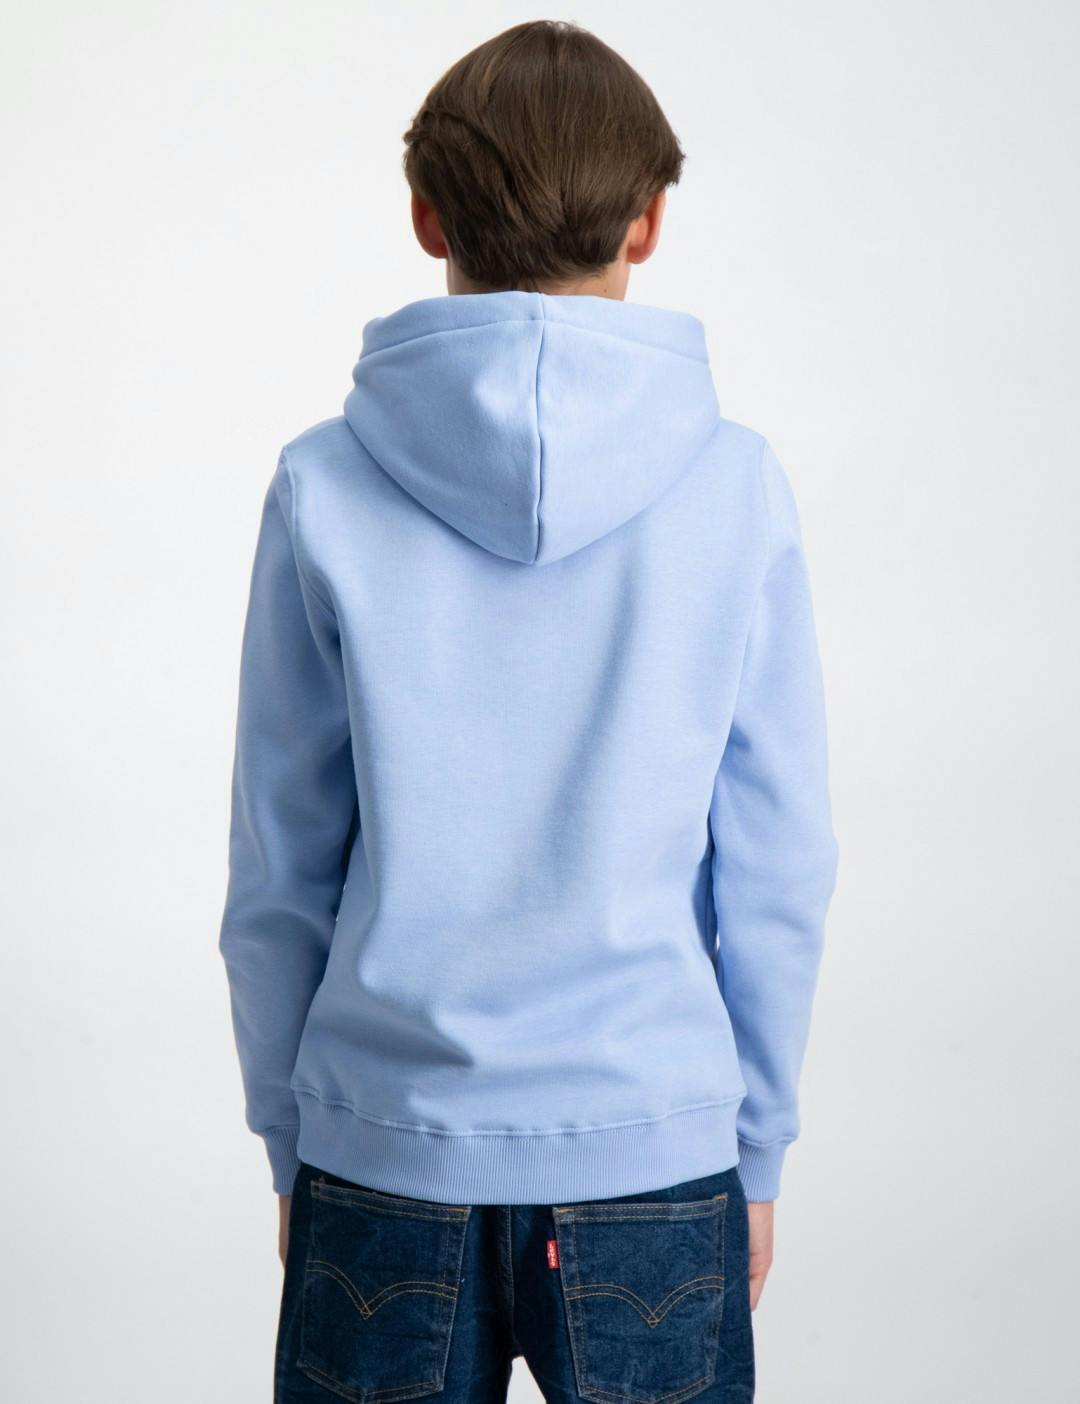 Kille Blå Store Brand Kids Basic för | Kids/Teens Hoody